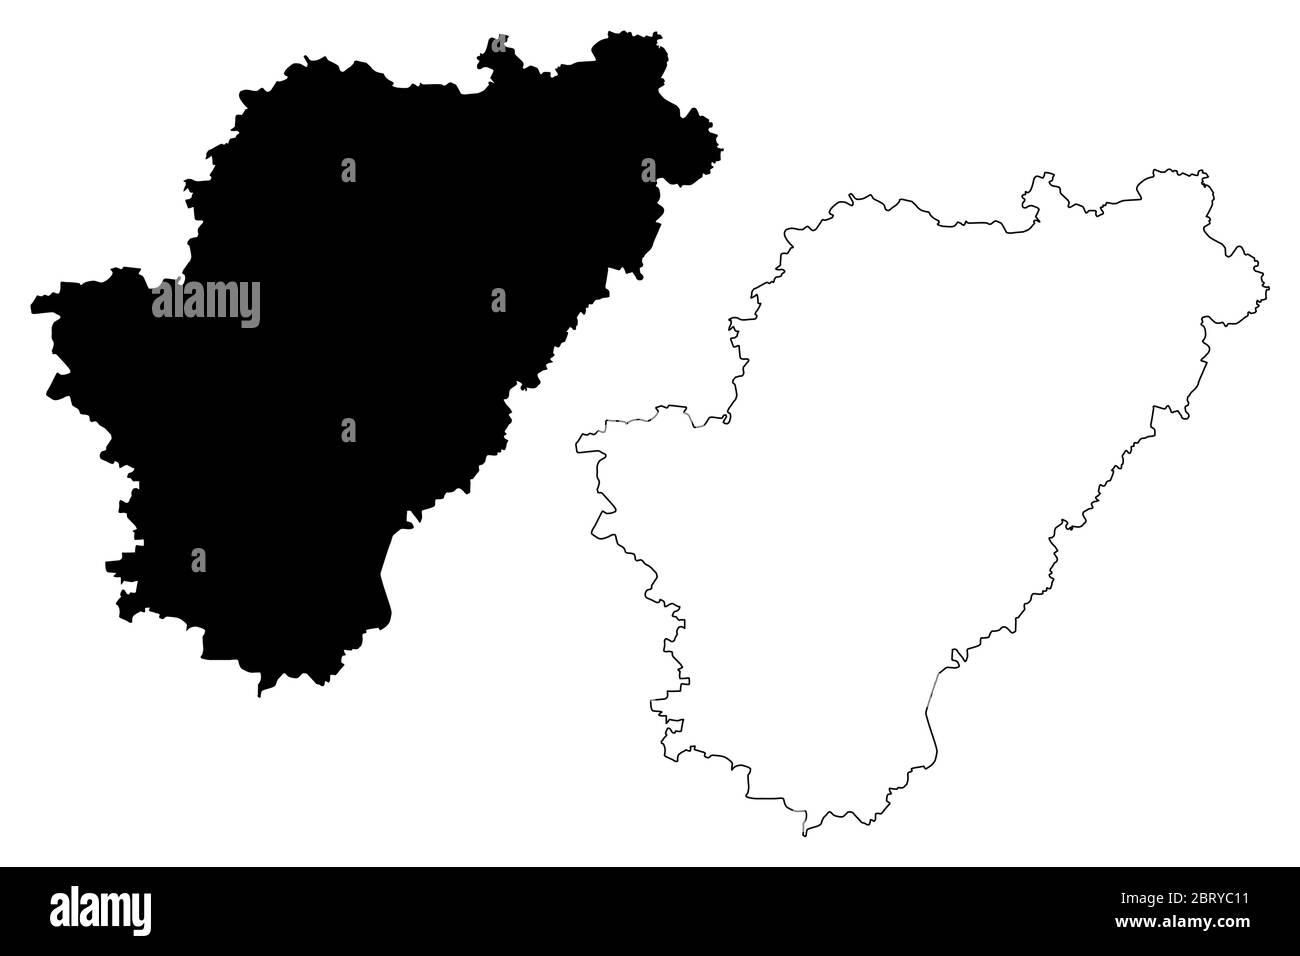 Département de la Charente (France, République française, région Nouvelle-Aquitaine) carte illustration vectorielle, scribble sketch carte Charanta Illustration de Vecteur